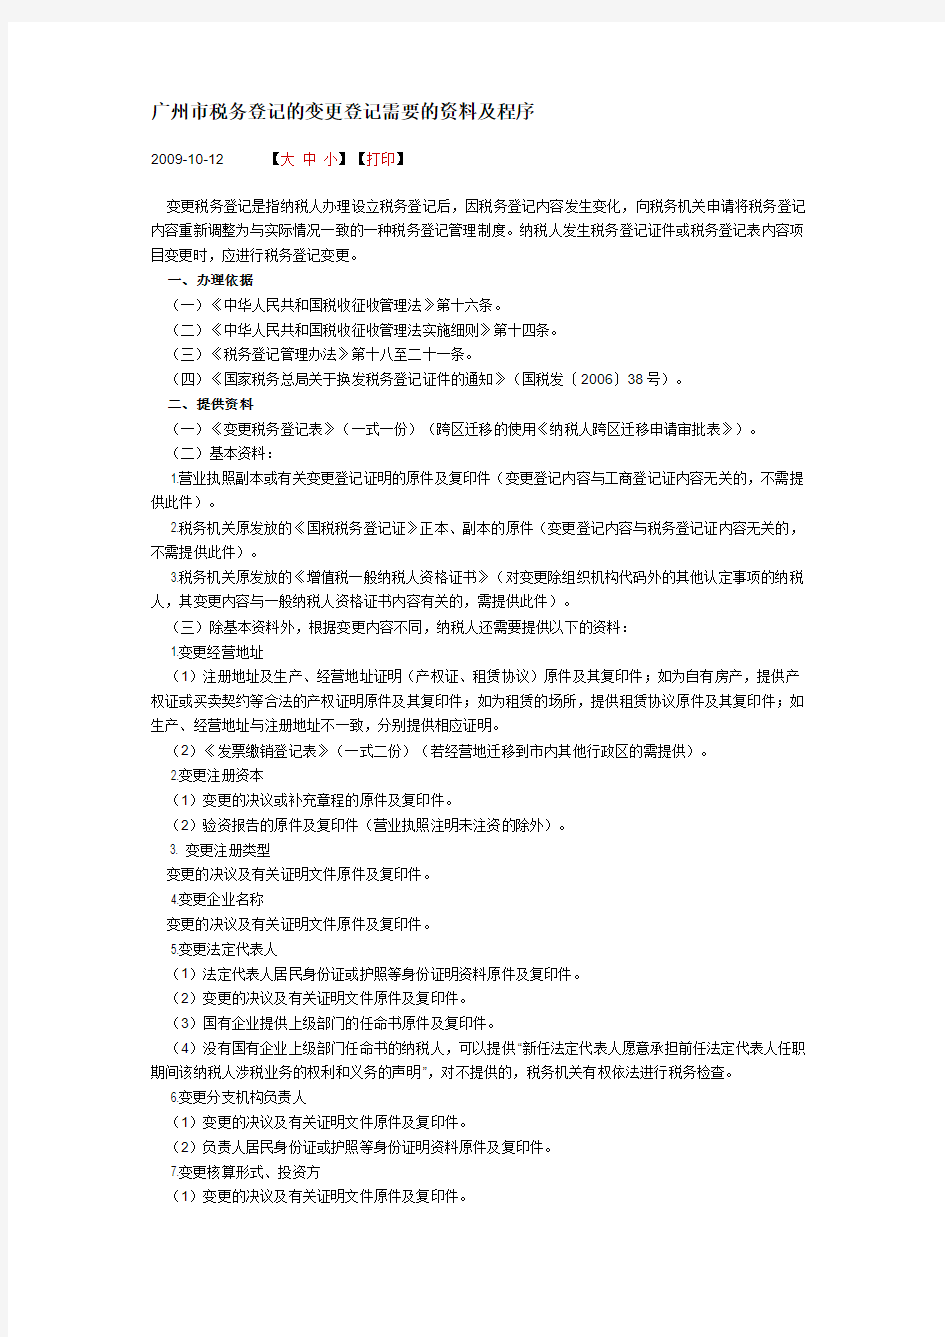 广州市税务登记的变更登记需要的资料及程序)